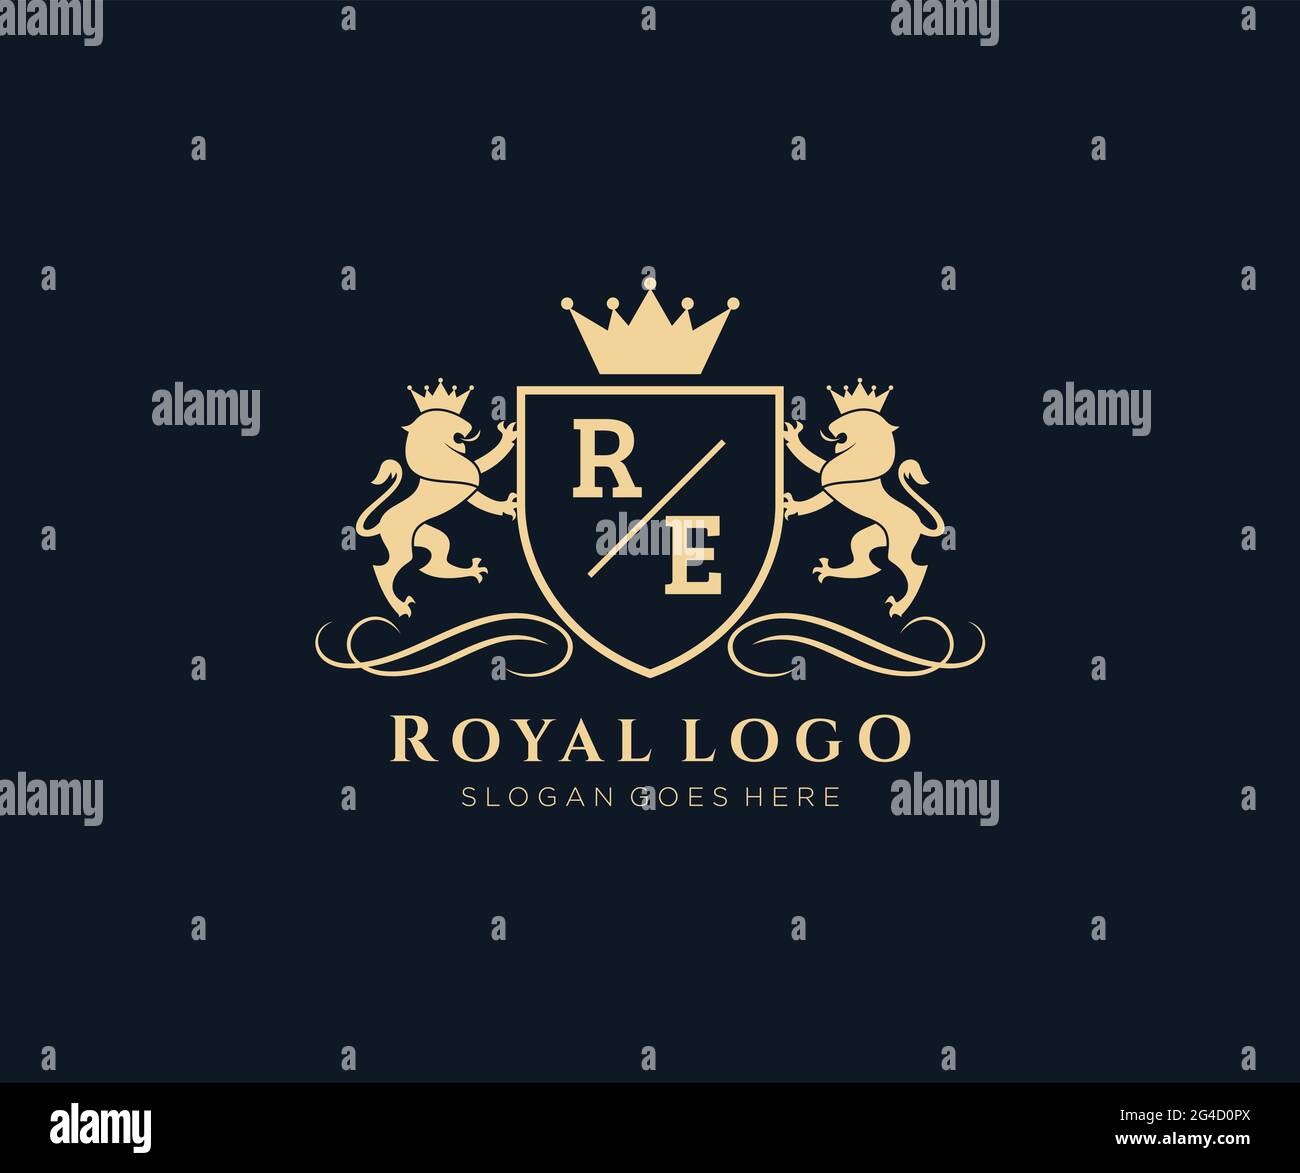 RE Buchstabe Lion Royal Luxury heraldic, Crest Logo Vorlage in Vektorgrafik für Restaurant, Royalty, Boutique, Cafe, Hotel, Heraldik, Schmuck, Mode und Stock Vektor